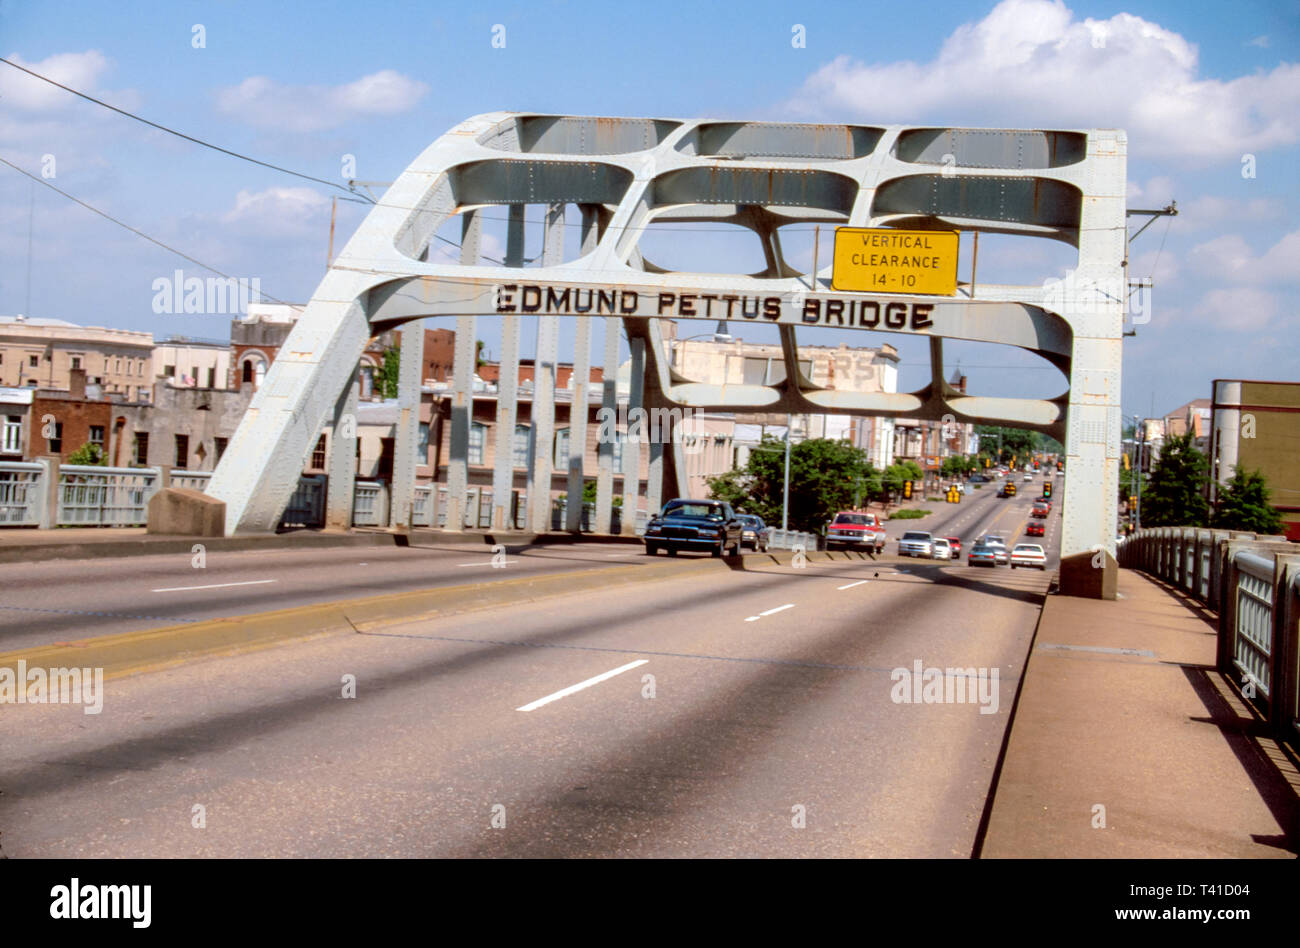 Alabama Selma Edmund Petus Bridge, cavalcavia, collegamento, collegamento, Bloody Domenica diritto civile marzo sito 1965 diritti di voto legge AL068, visitatori viaggio Foto Stock